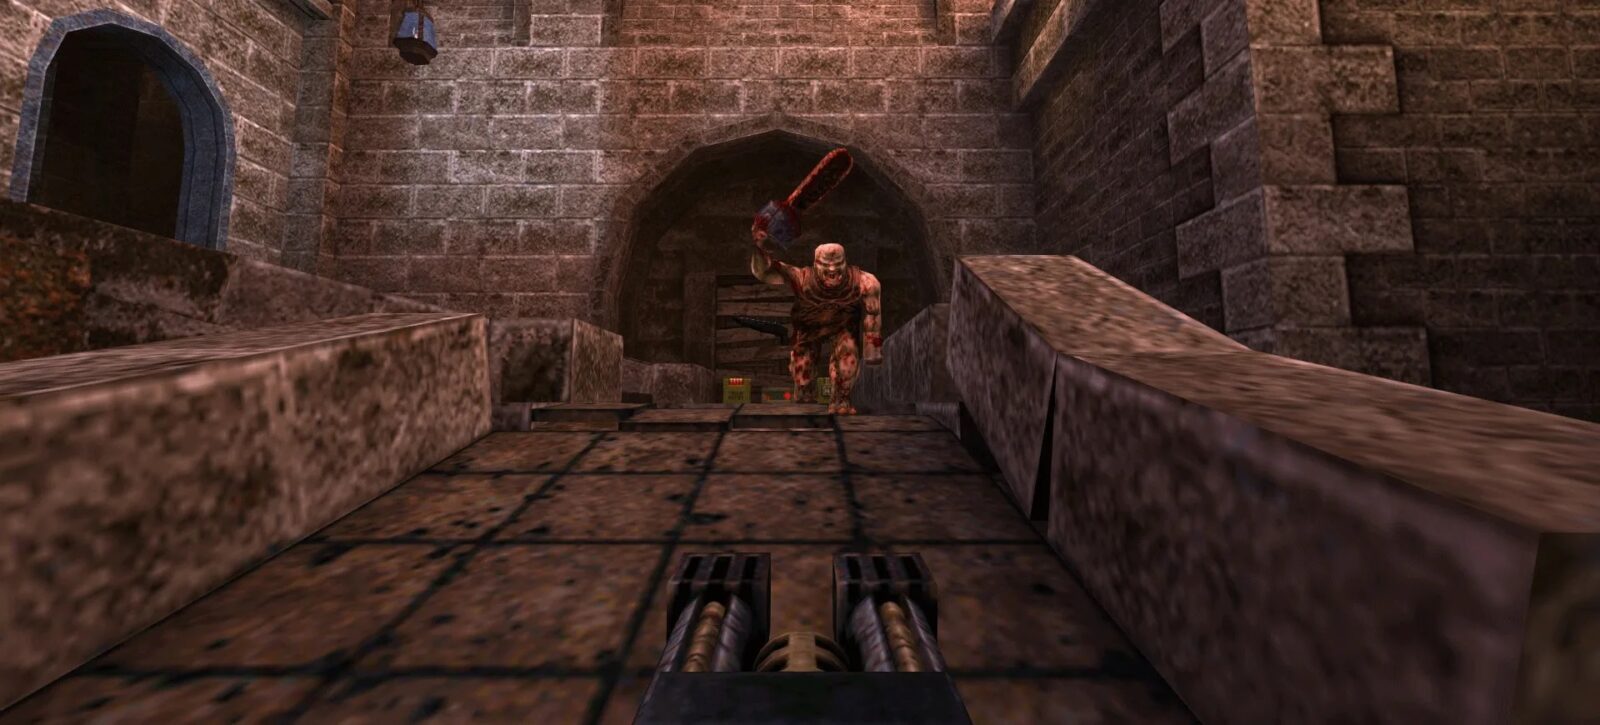 Remaster Ulang Tahun ke 25 Quake Telah Tersedia Dengan Konten Baru Dari MachineGames